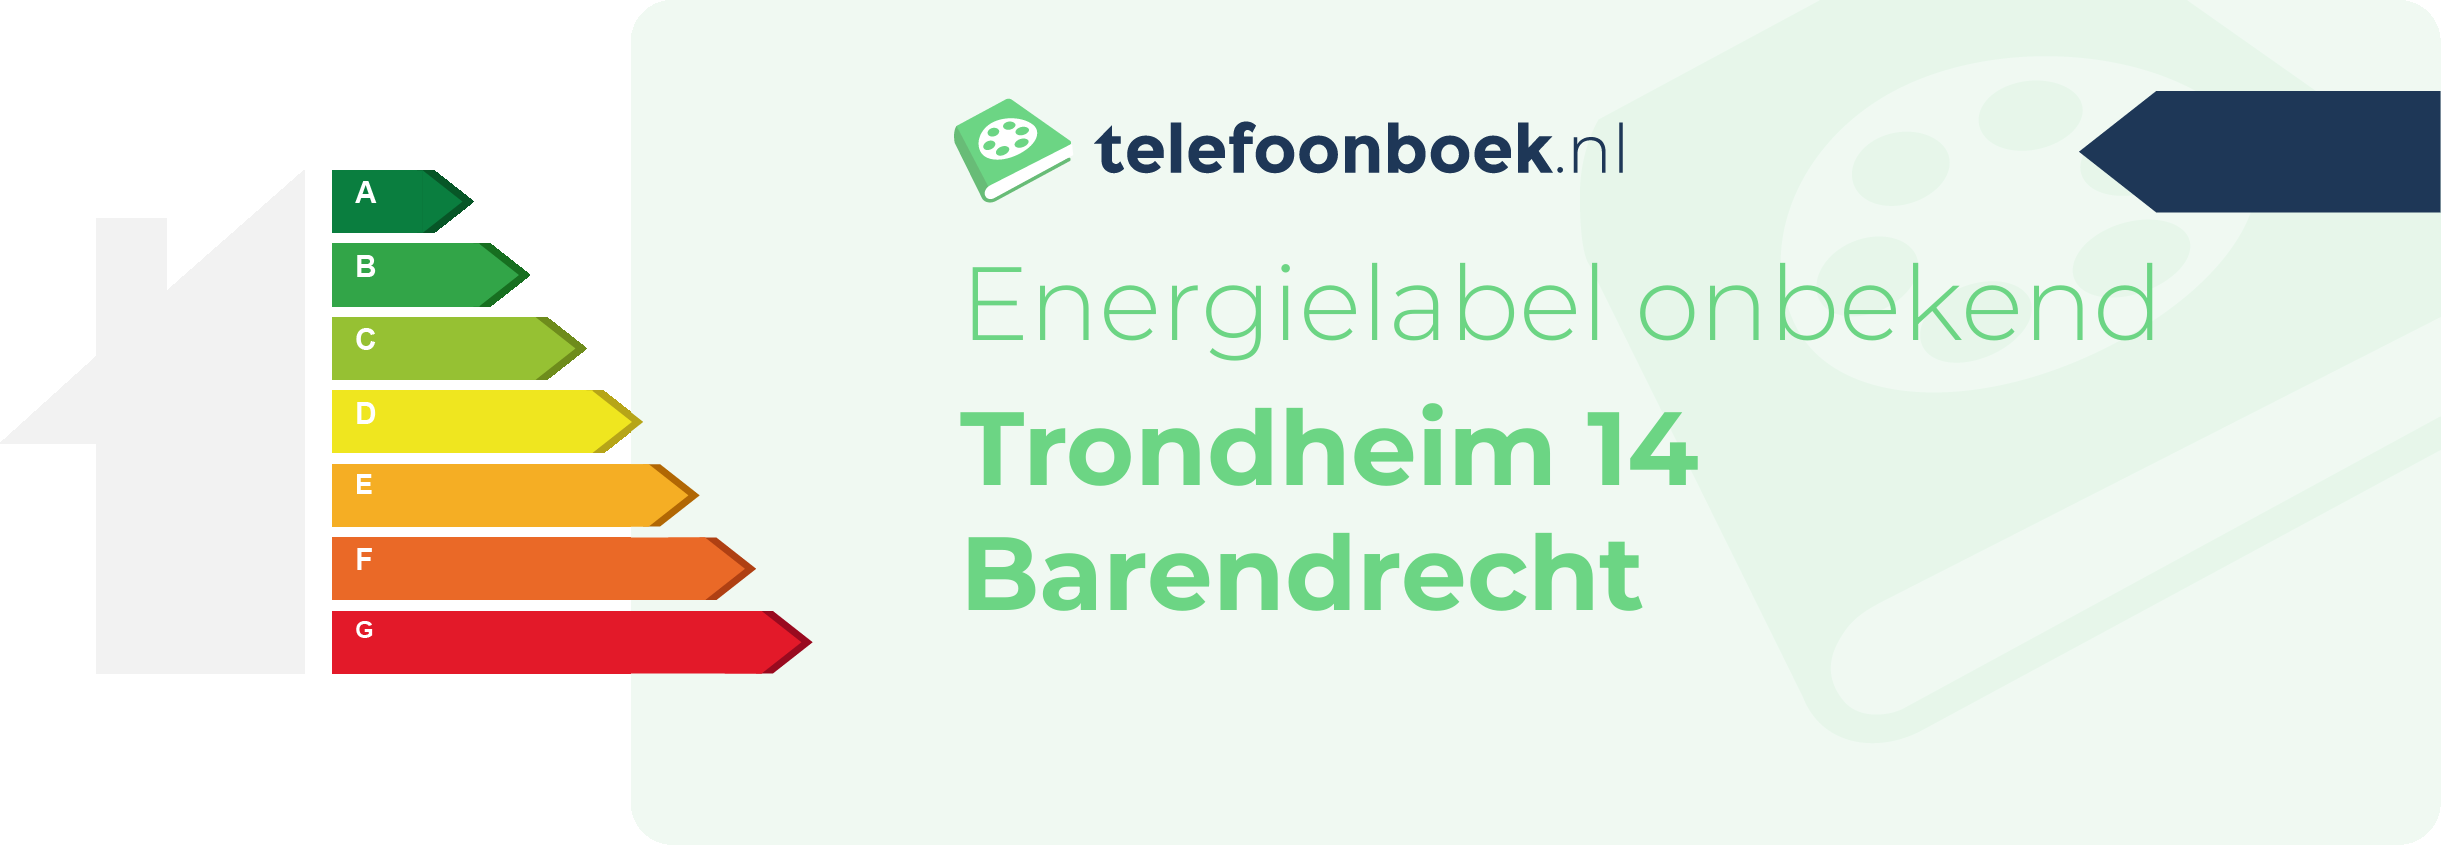 Energielabel Trondheim 14 Barendrecht